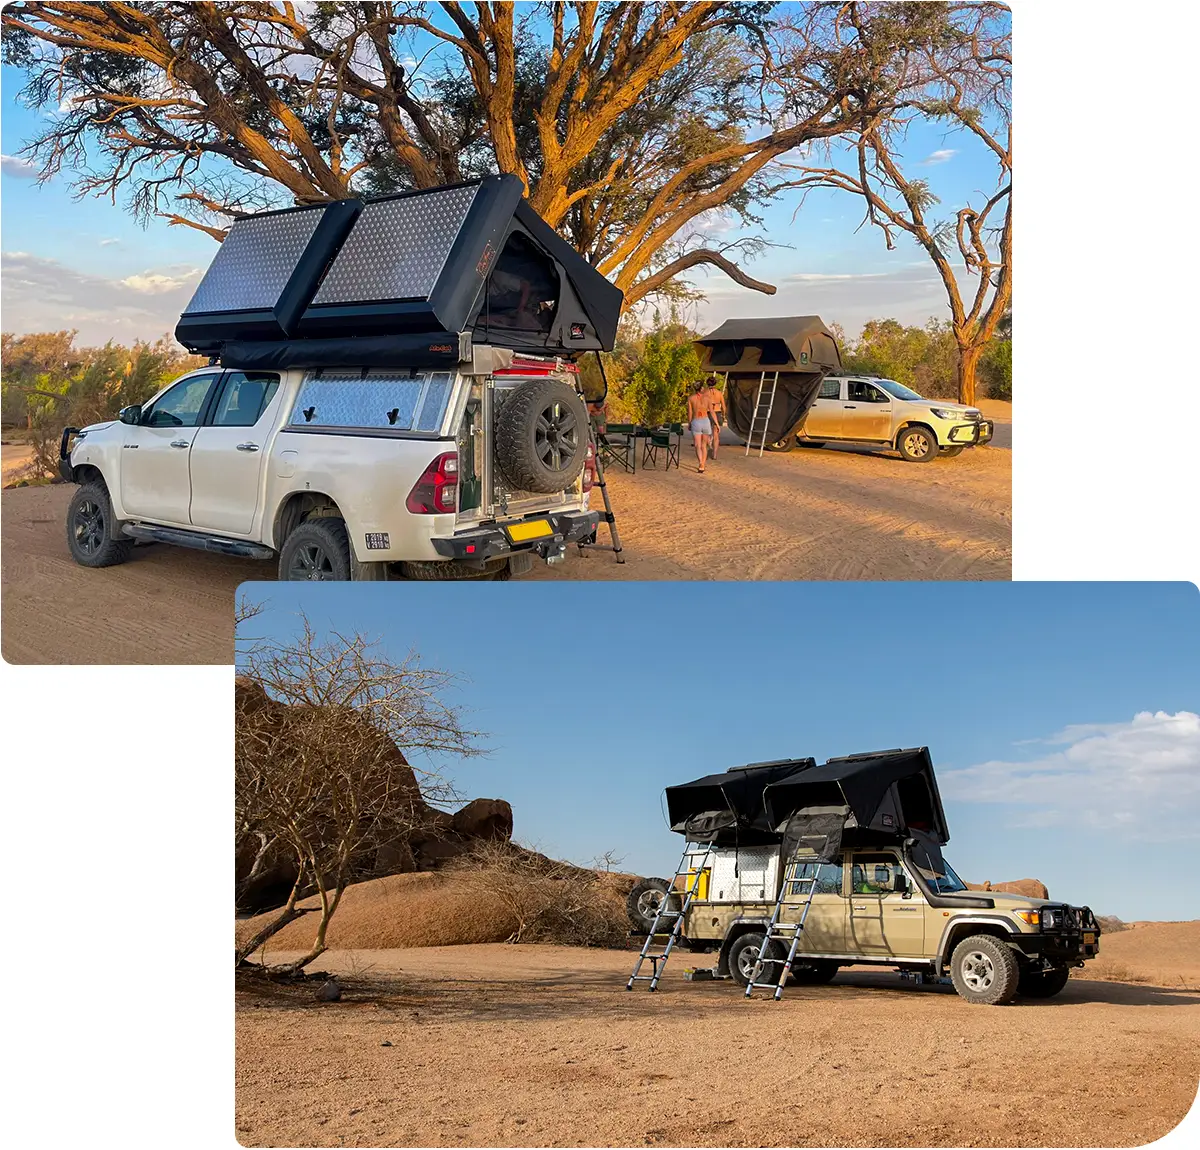 Autohuur-Namibie-4x4-huurauto-Kamperen-3-tot-5-personen